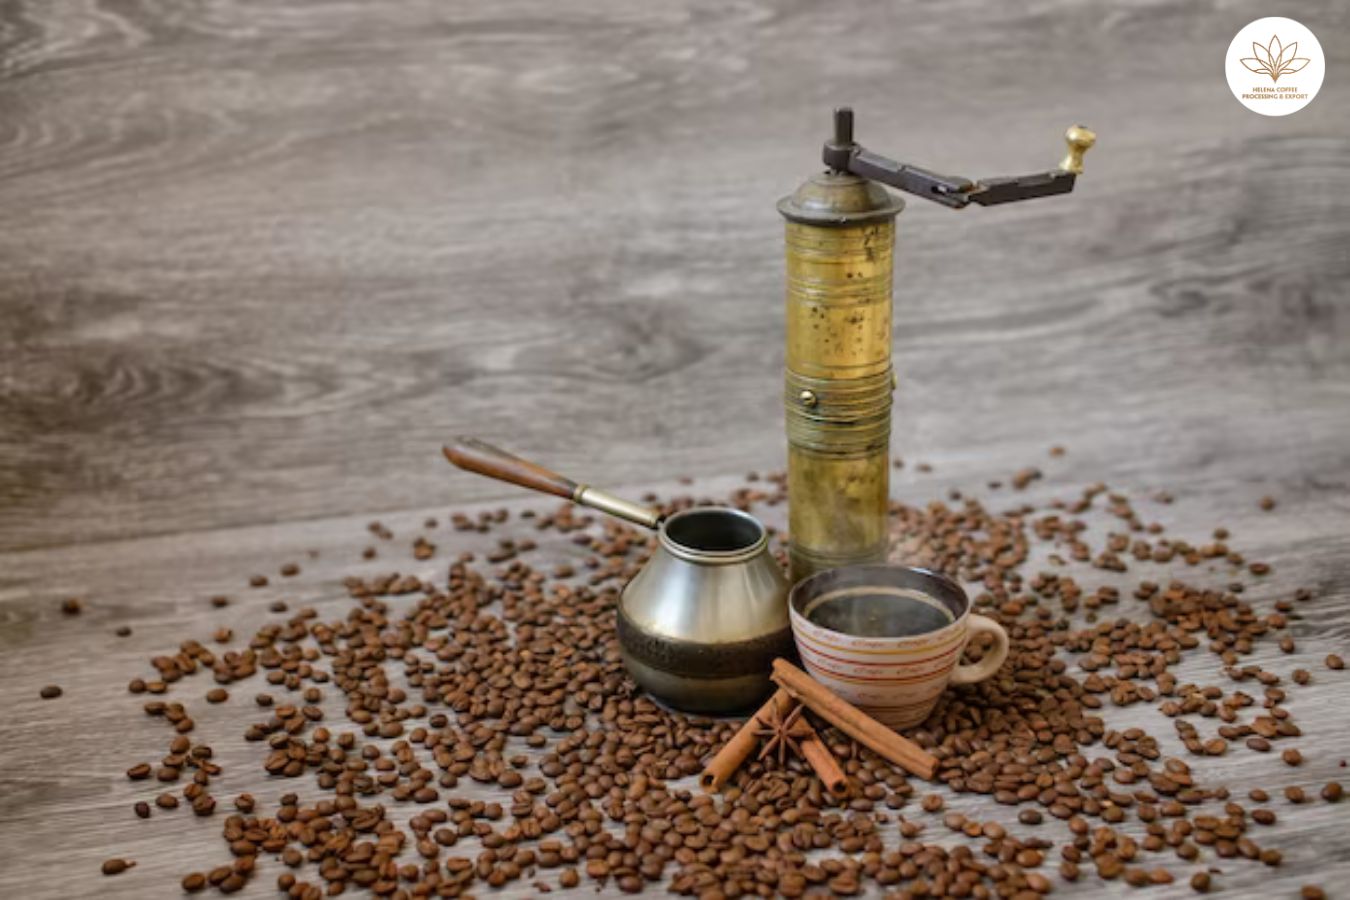 TURKISH COFFEE GRINDER